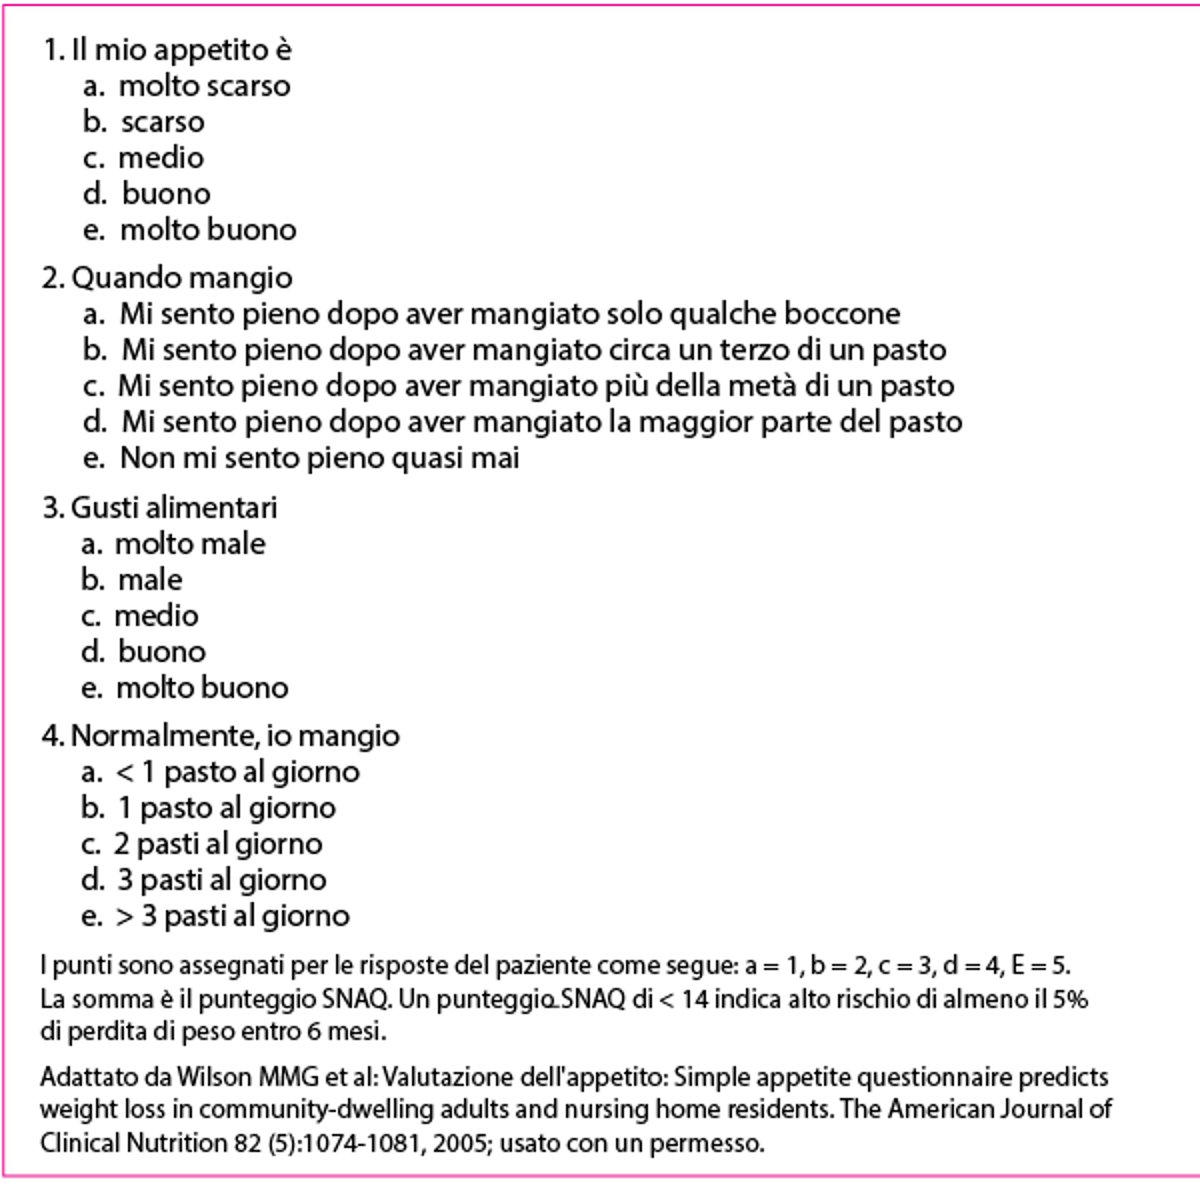 Questionario semplificato di valutazione nutrizionale (simplified nutrition assessment questionnaire, SNAQ)